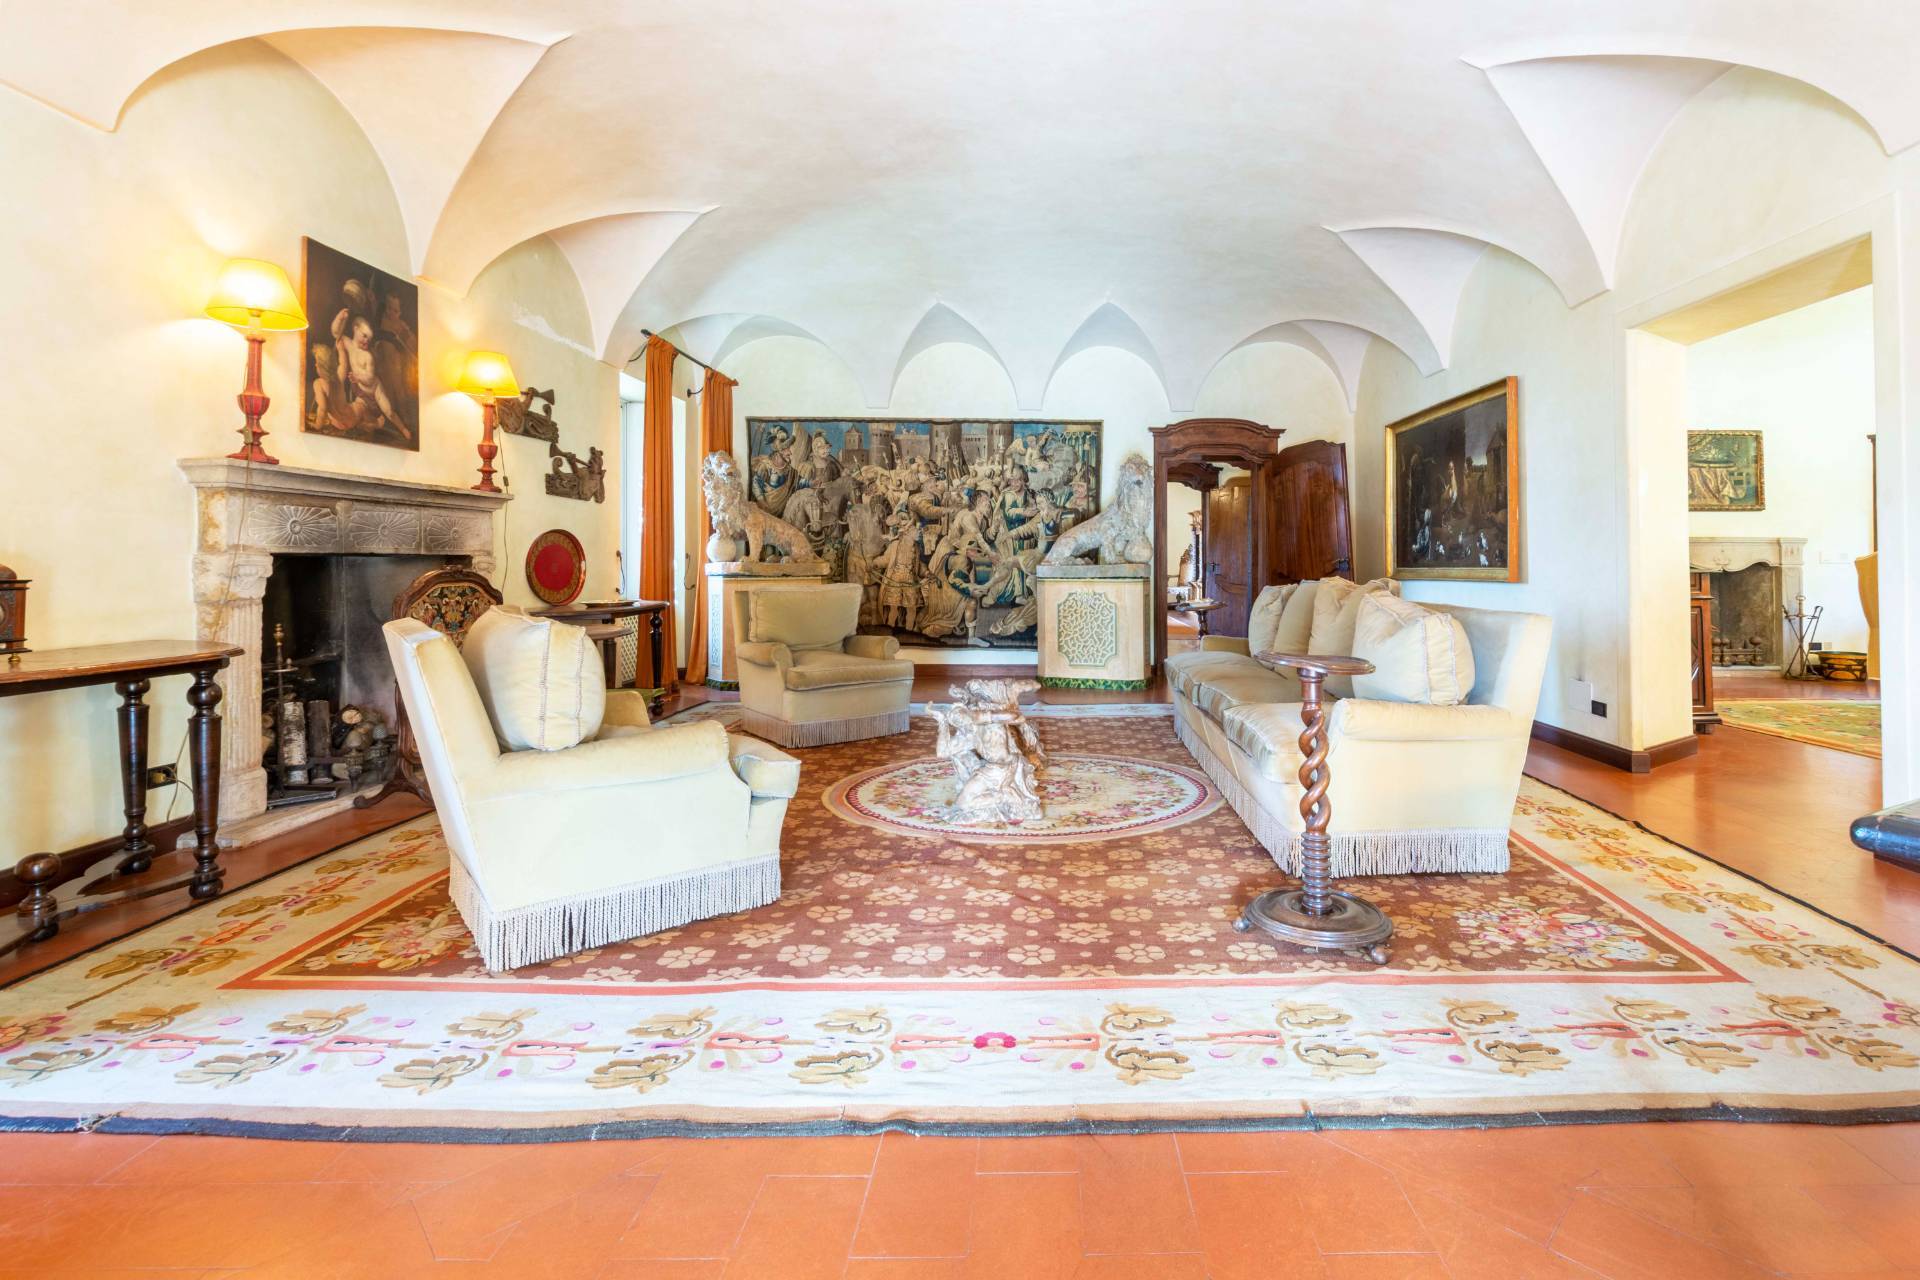 Villa in vendita Biella